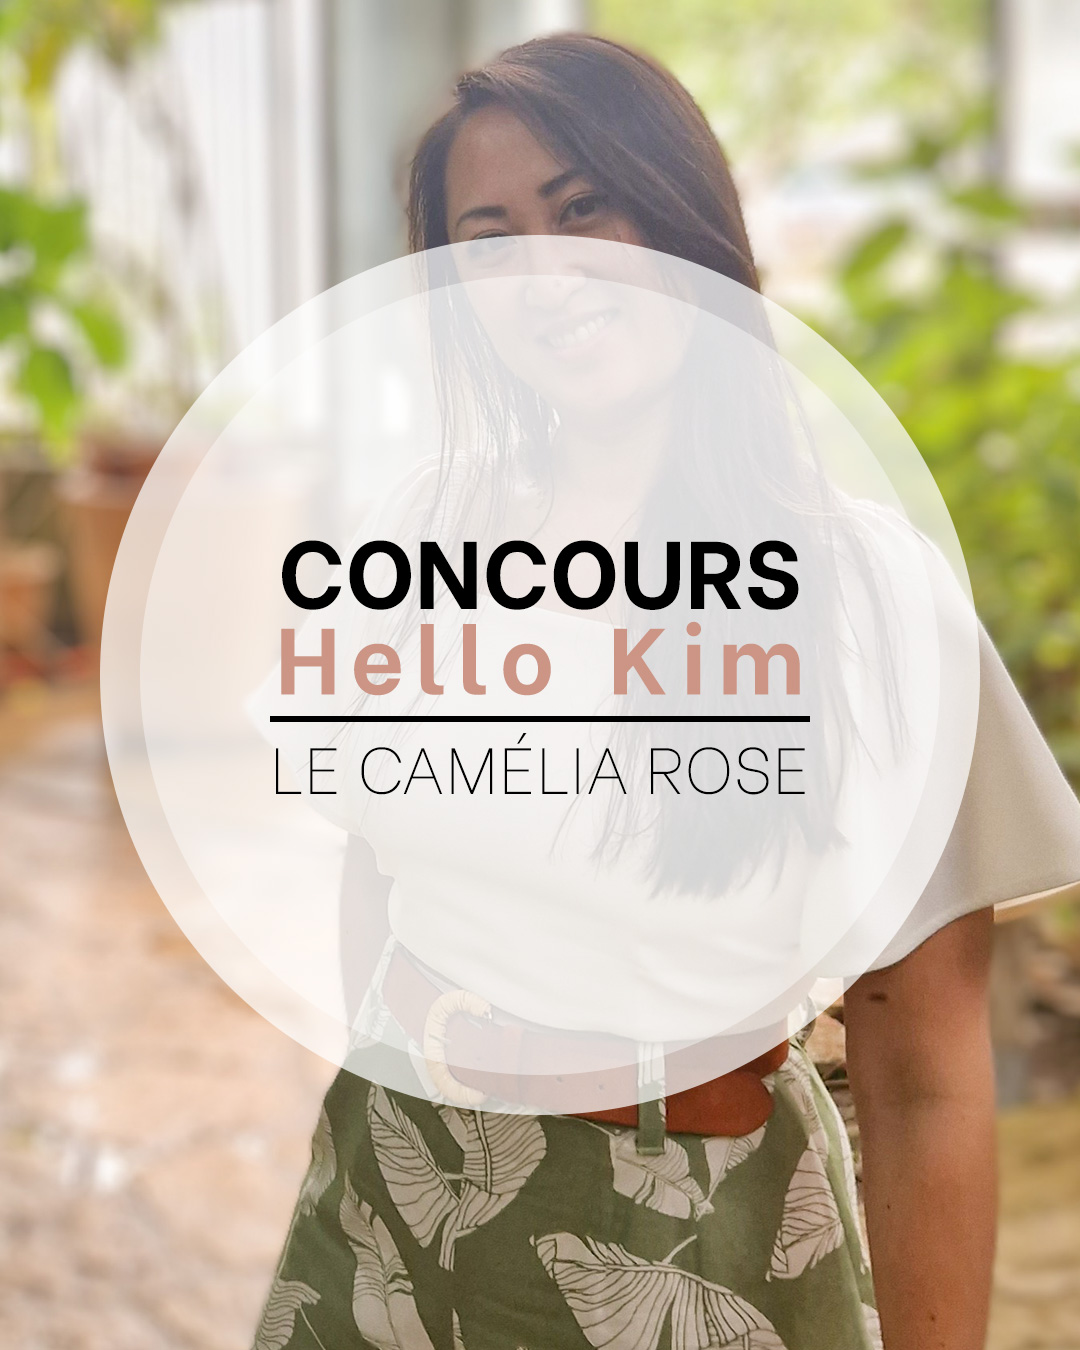 Concours Hello Kim et Le Camélia rose